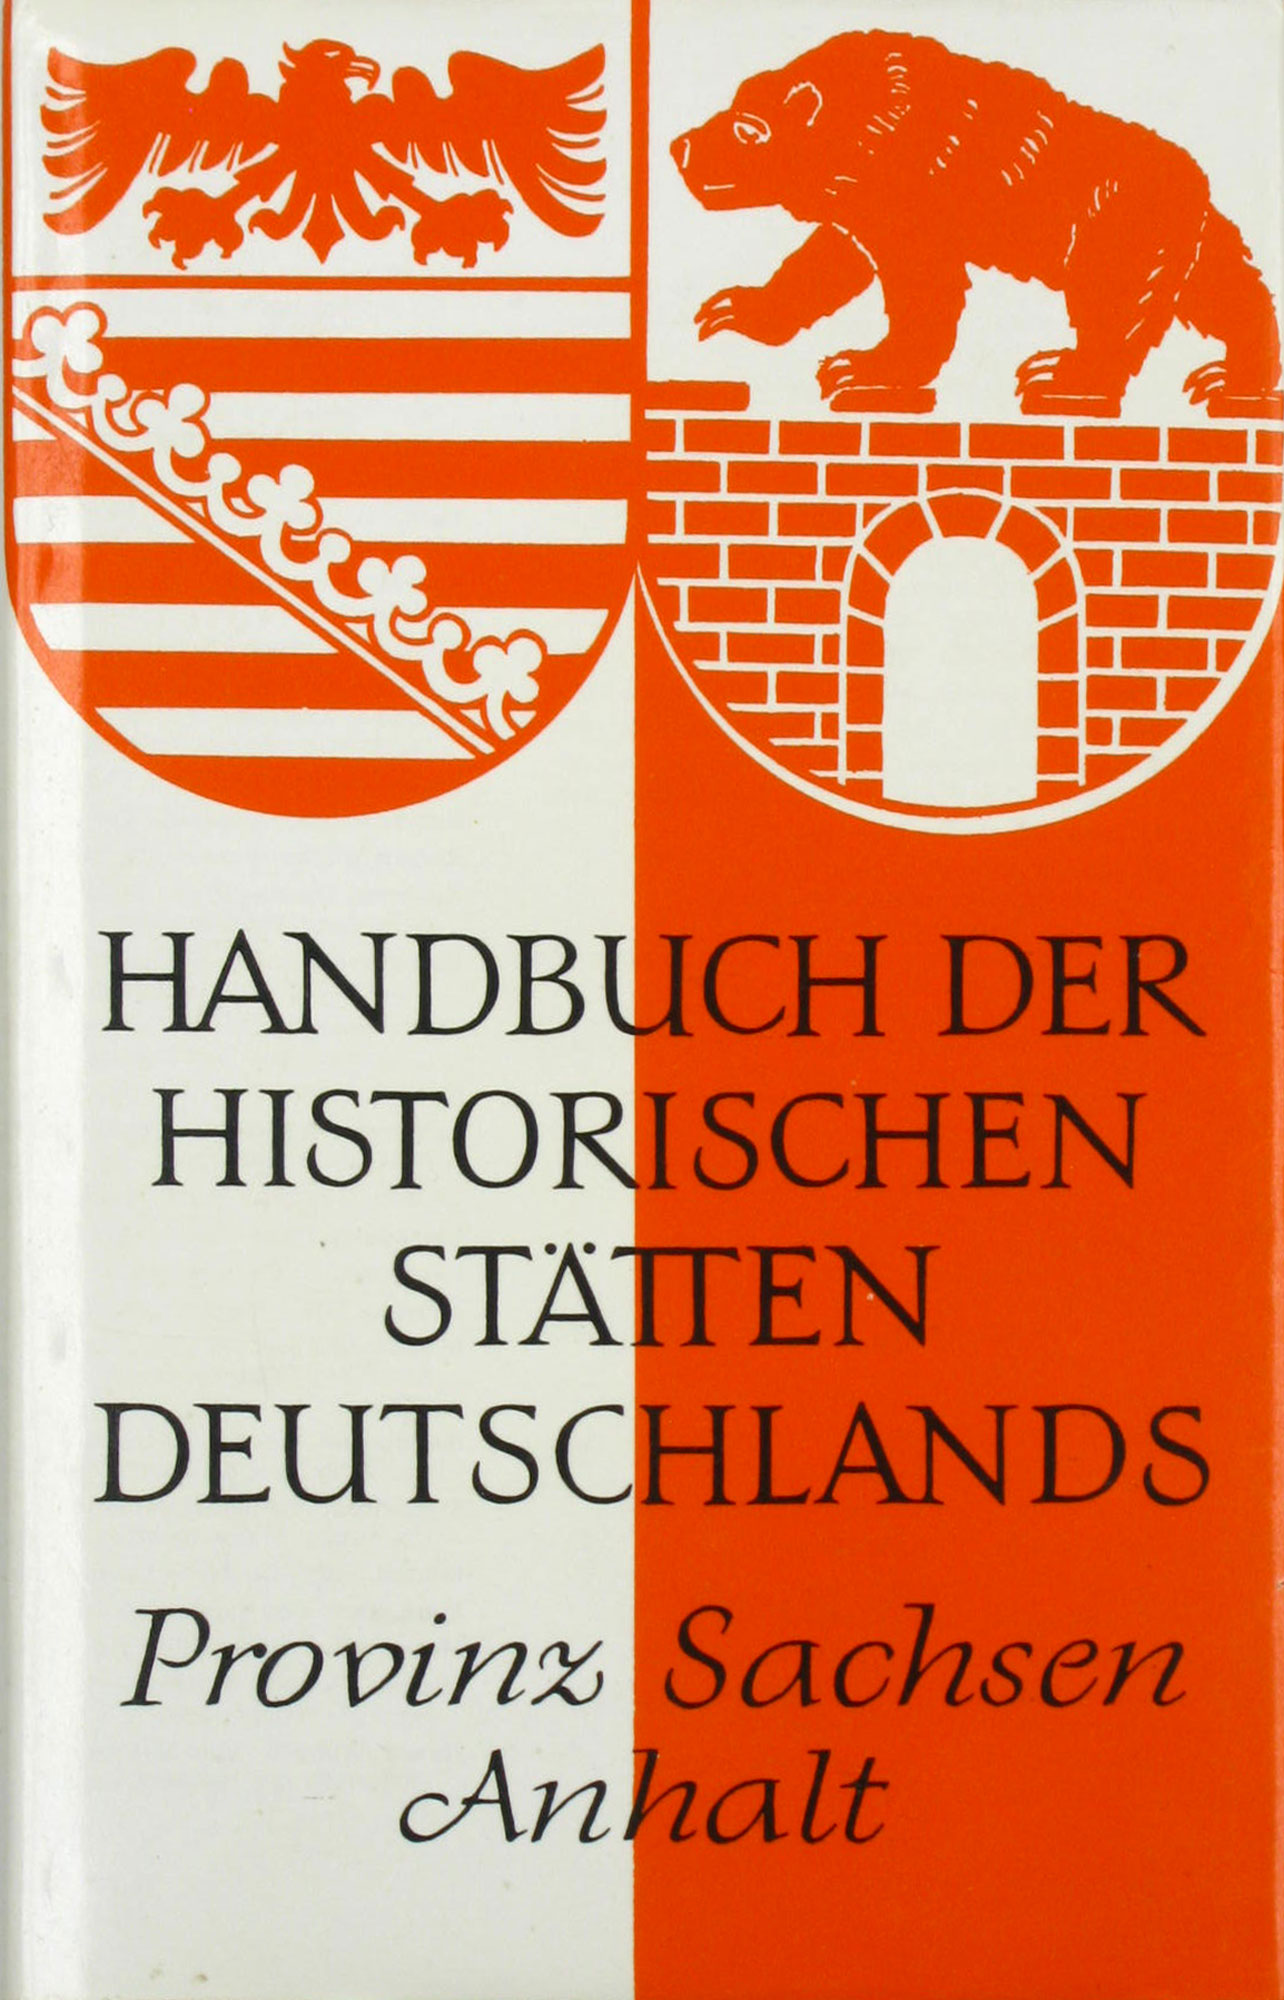 Schwineköper, Berent (Hrsg.):  Handbuch der historischen Stätten Deutschlands. Provinz Sachsen Anhalt. Band 11. 